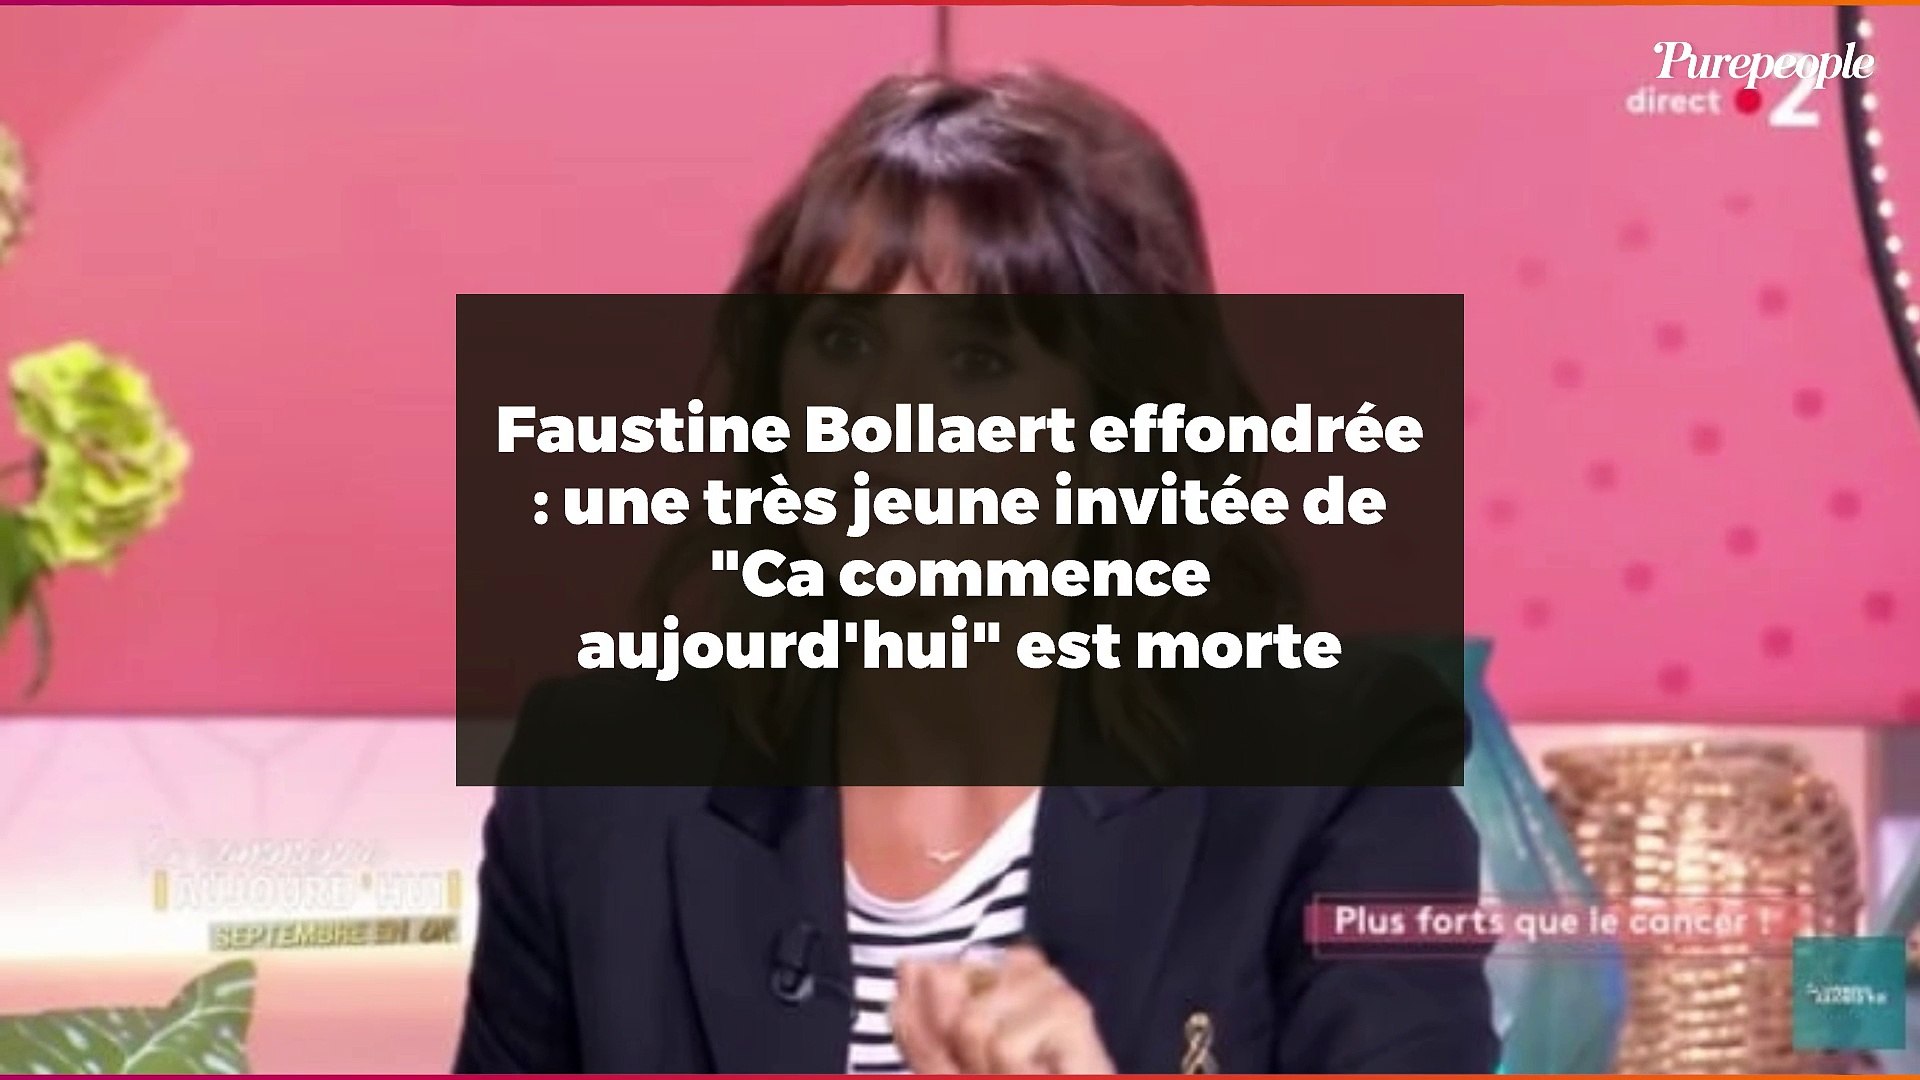 La boîte à secrets : Faustine Bollaert de retour ce soir sur France 3 -  Puremedias